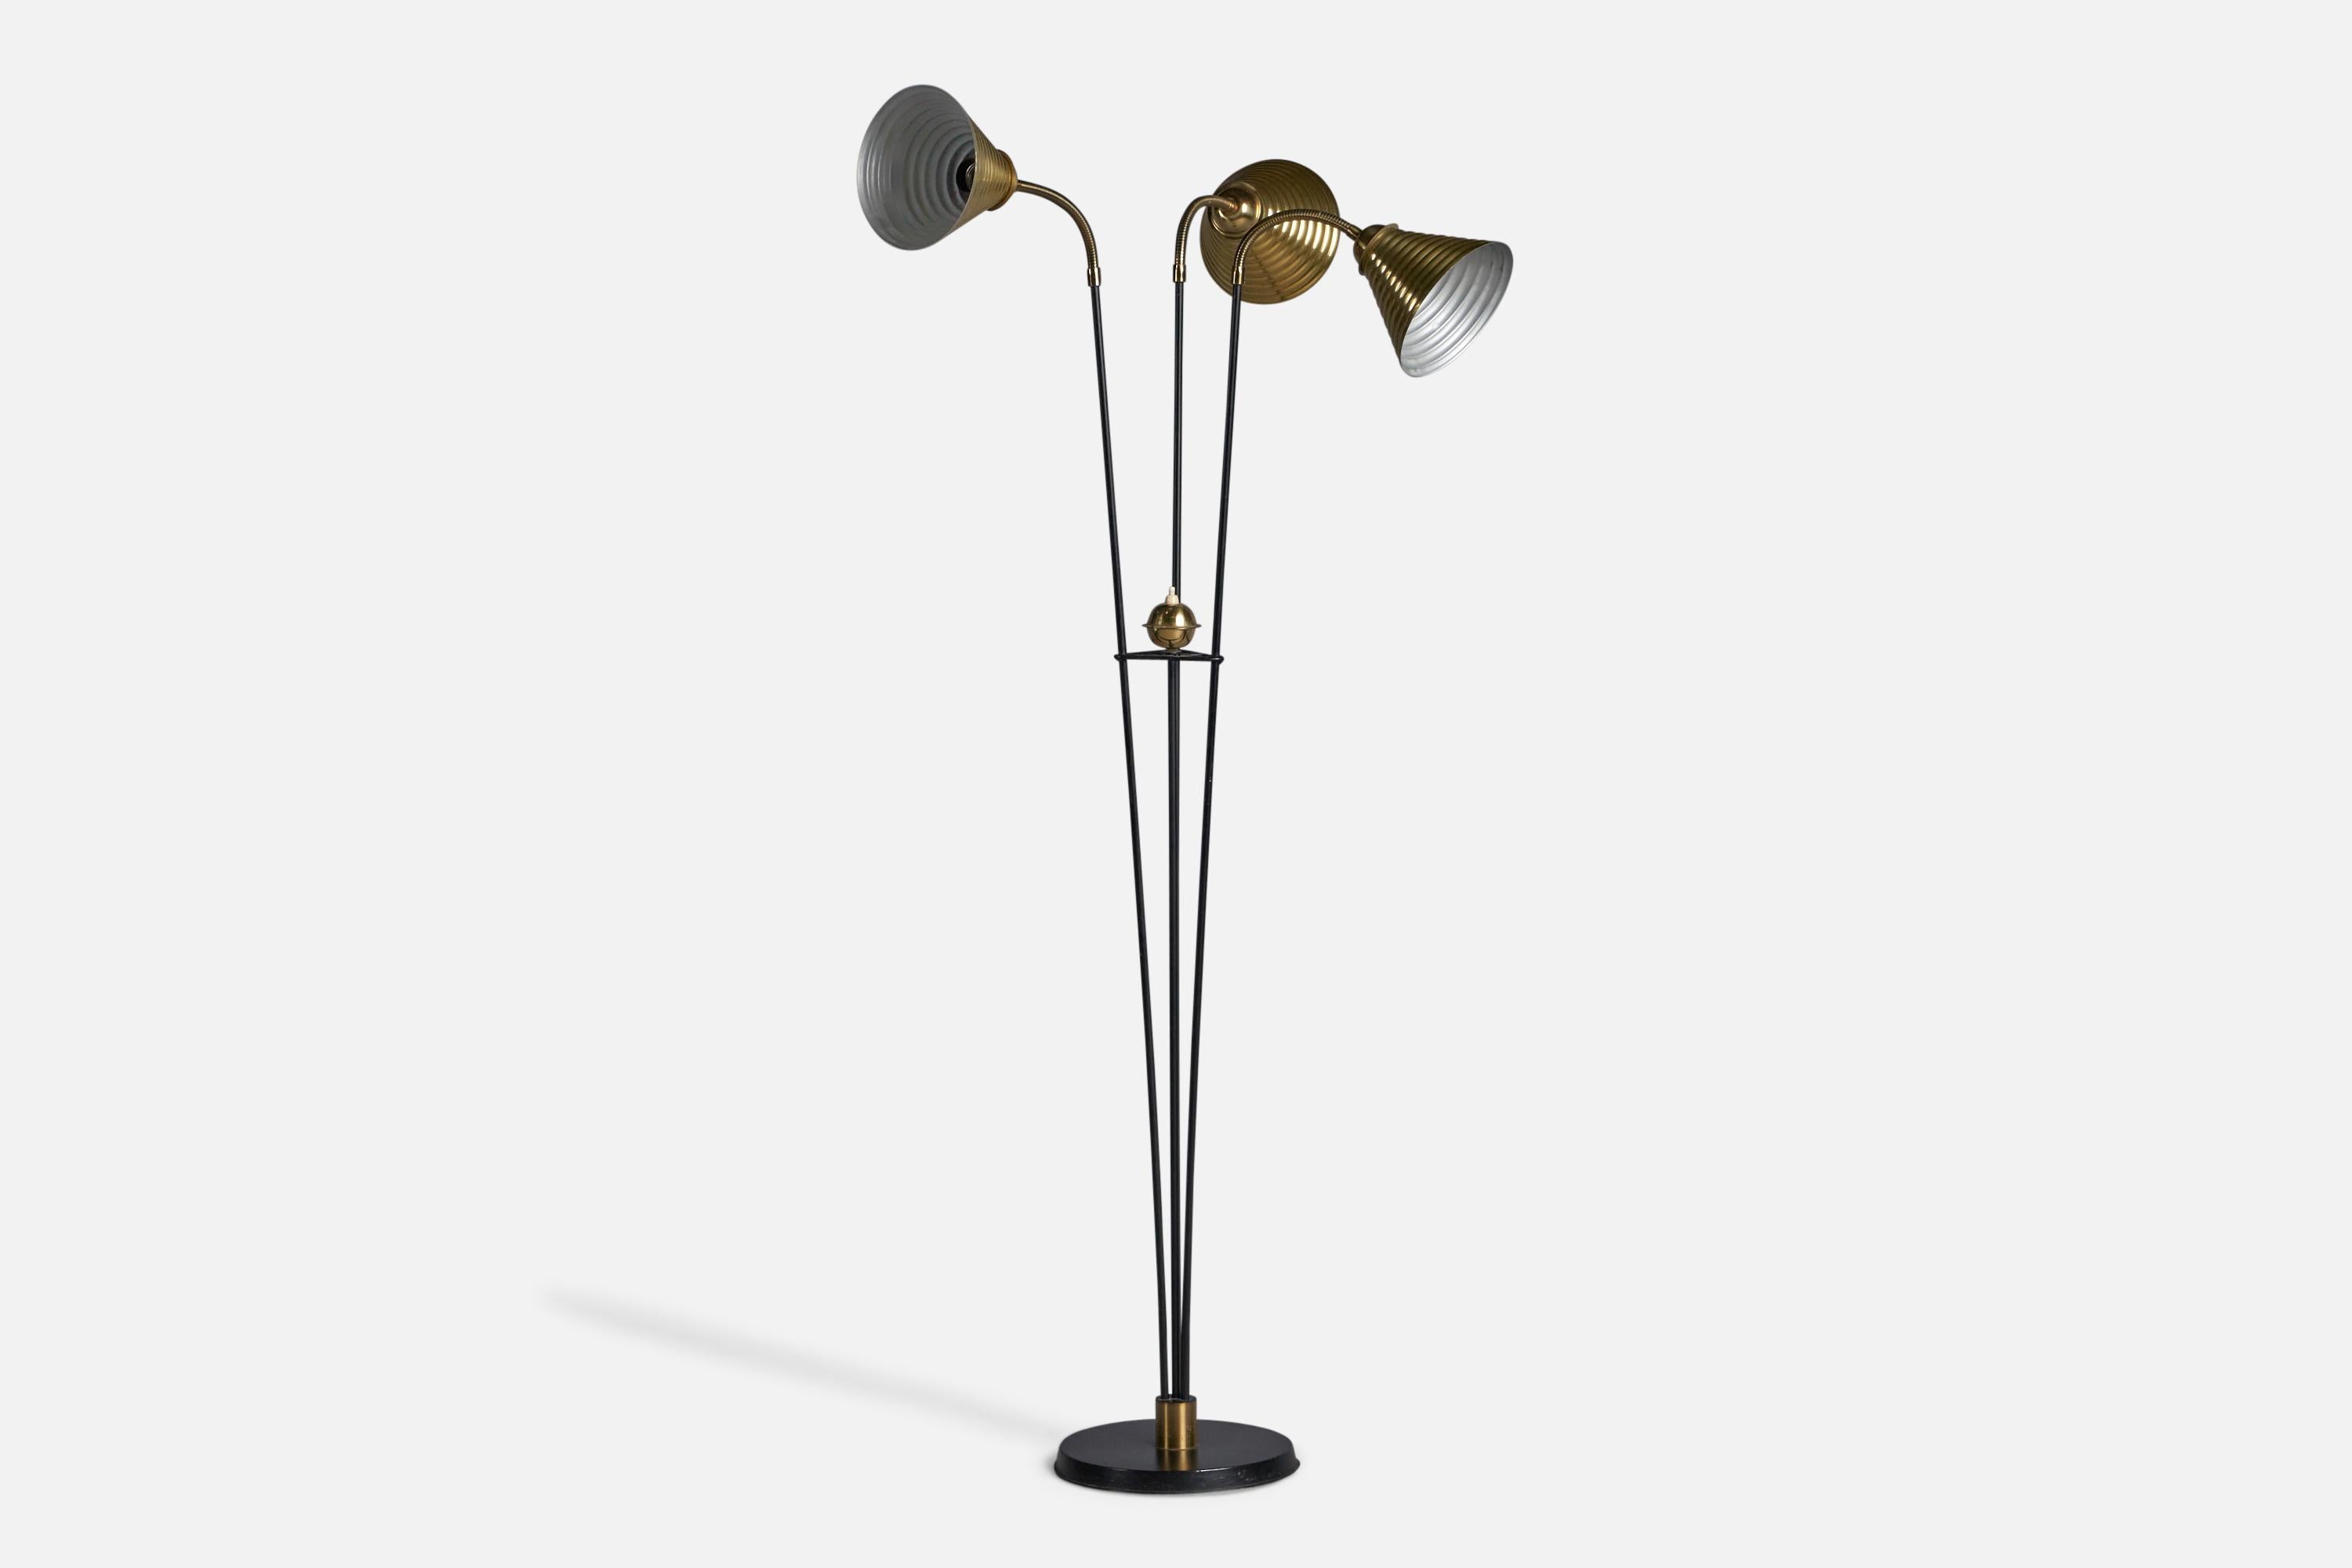 Lampadaire réglable à trois bras en laiton et métal laqué noir, conçu et produit en Suède, vers les années 1950.

Dimensions globales (pouces) : 53.75